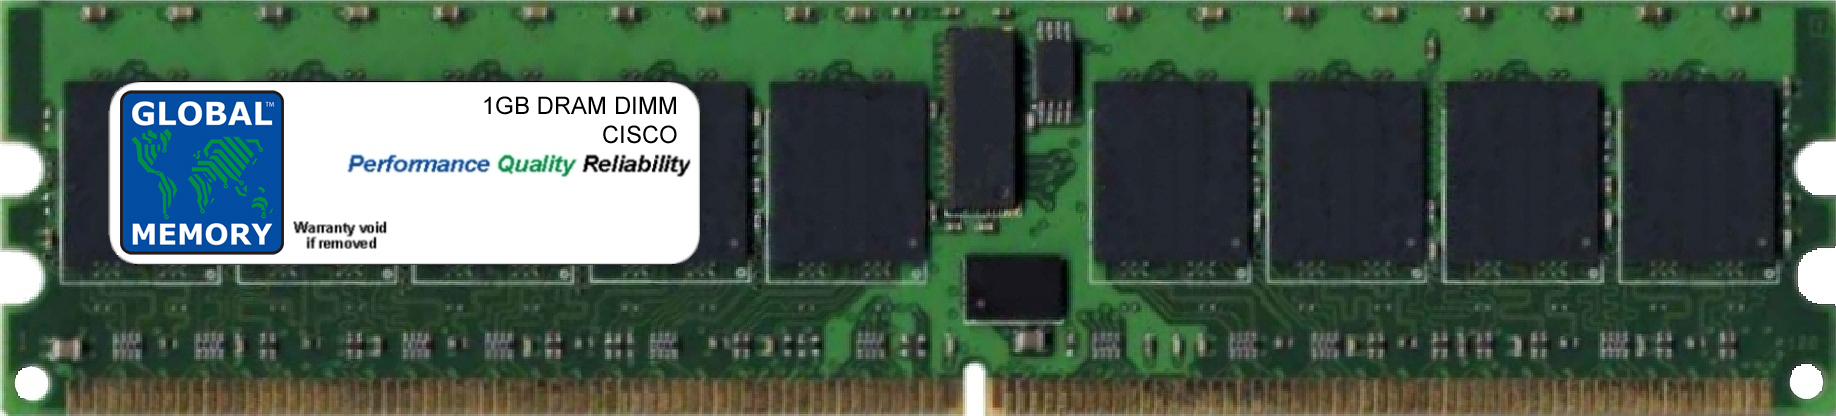 1GB DRAM DIMM MEMORY RAM FOR CISCO MEDIA CONVERGENCE SERVER MCS 7845-H1 (MEM-7845-H1-1GB) - Click Image to Close